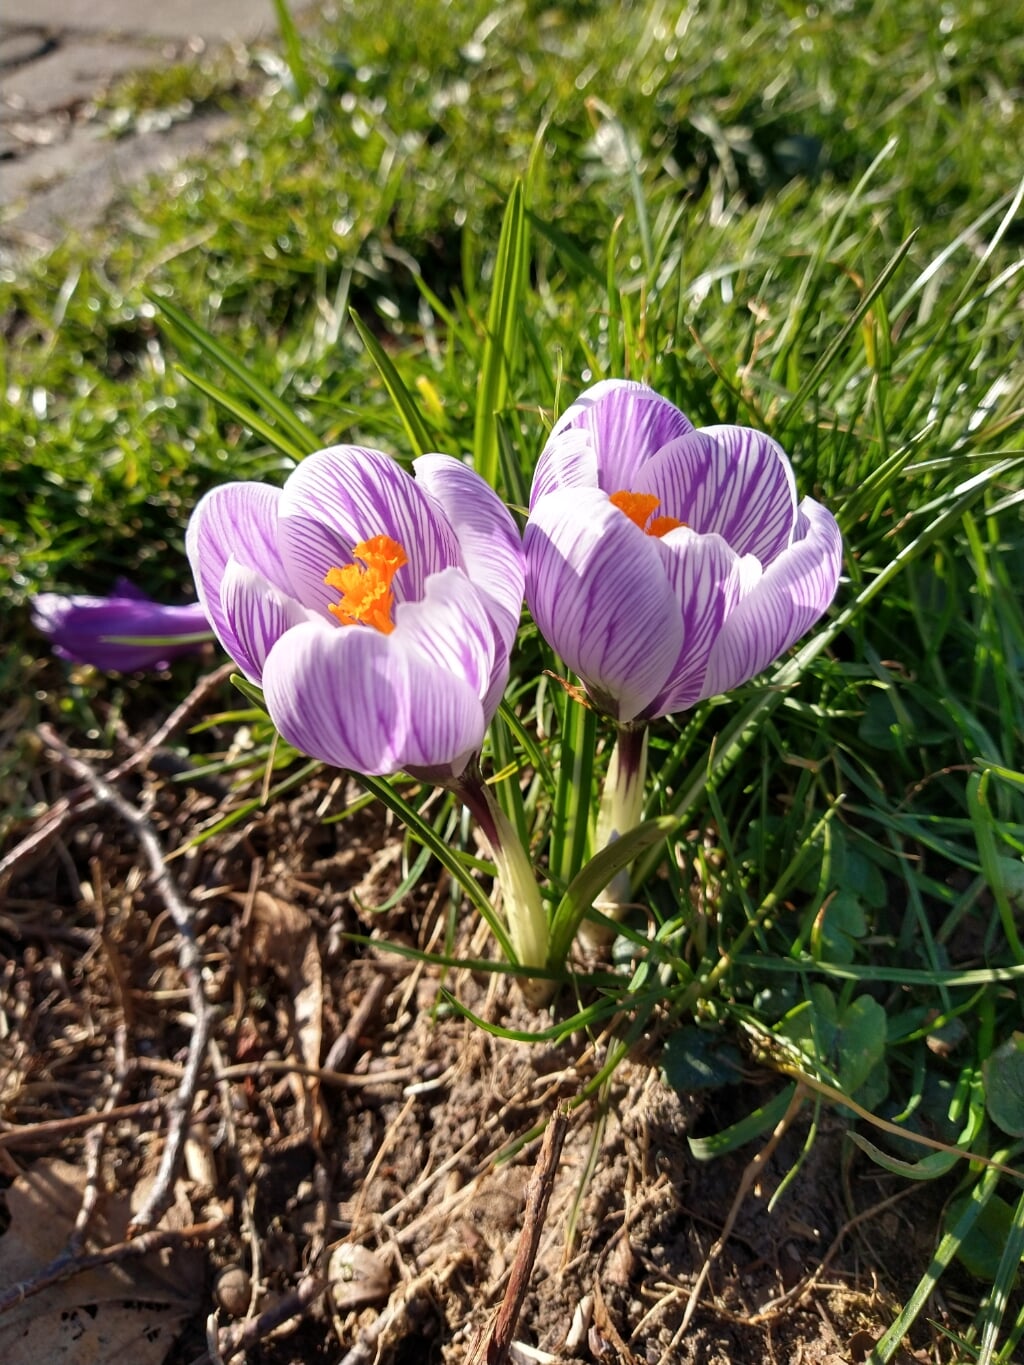 De lente komt eraan! Ook hier langs het water langs Rijngaarde in Bodegraven. Beeld: Jacinta Laue